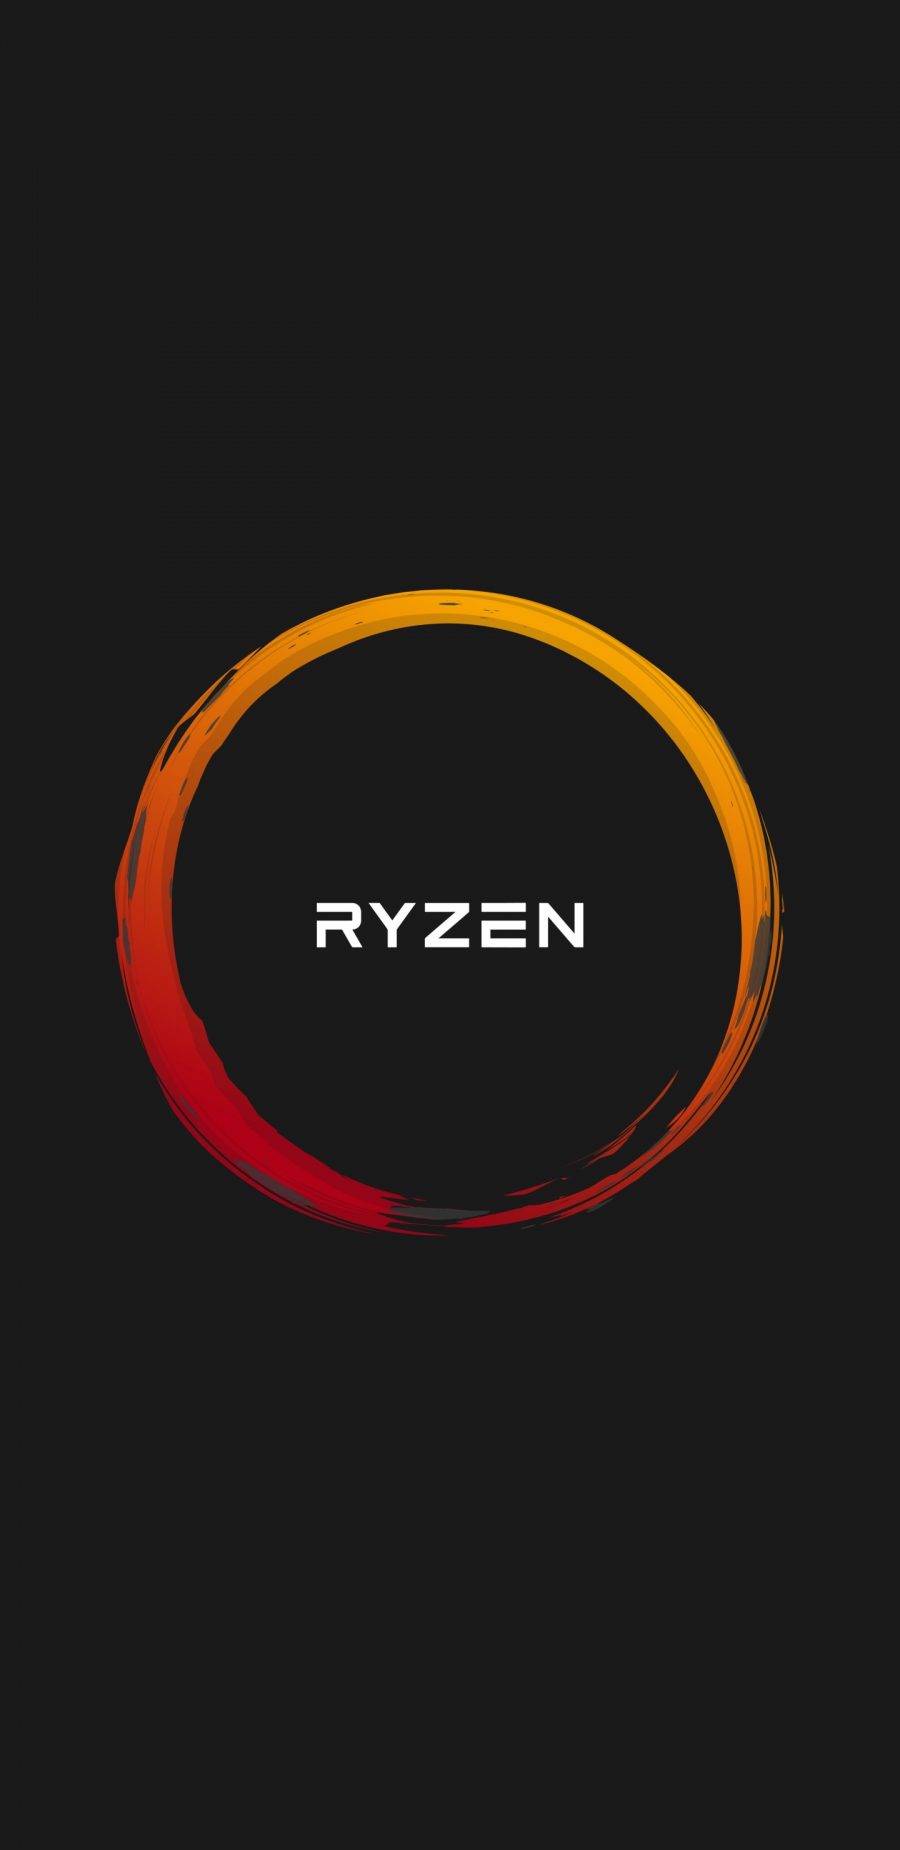 AMD Ryzen品牌LOGO壁纸 (1440×2960)